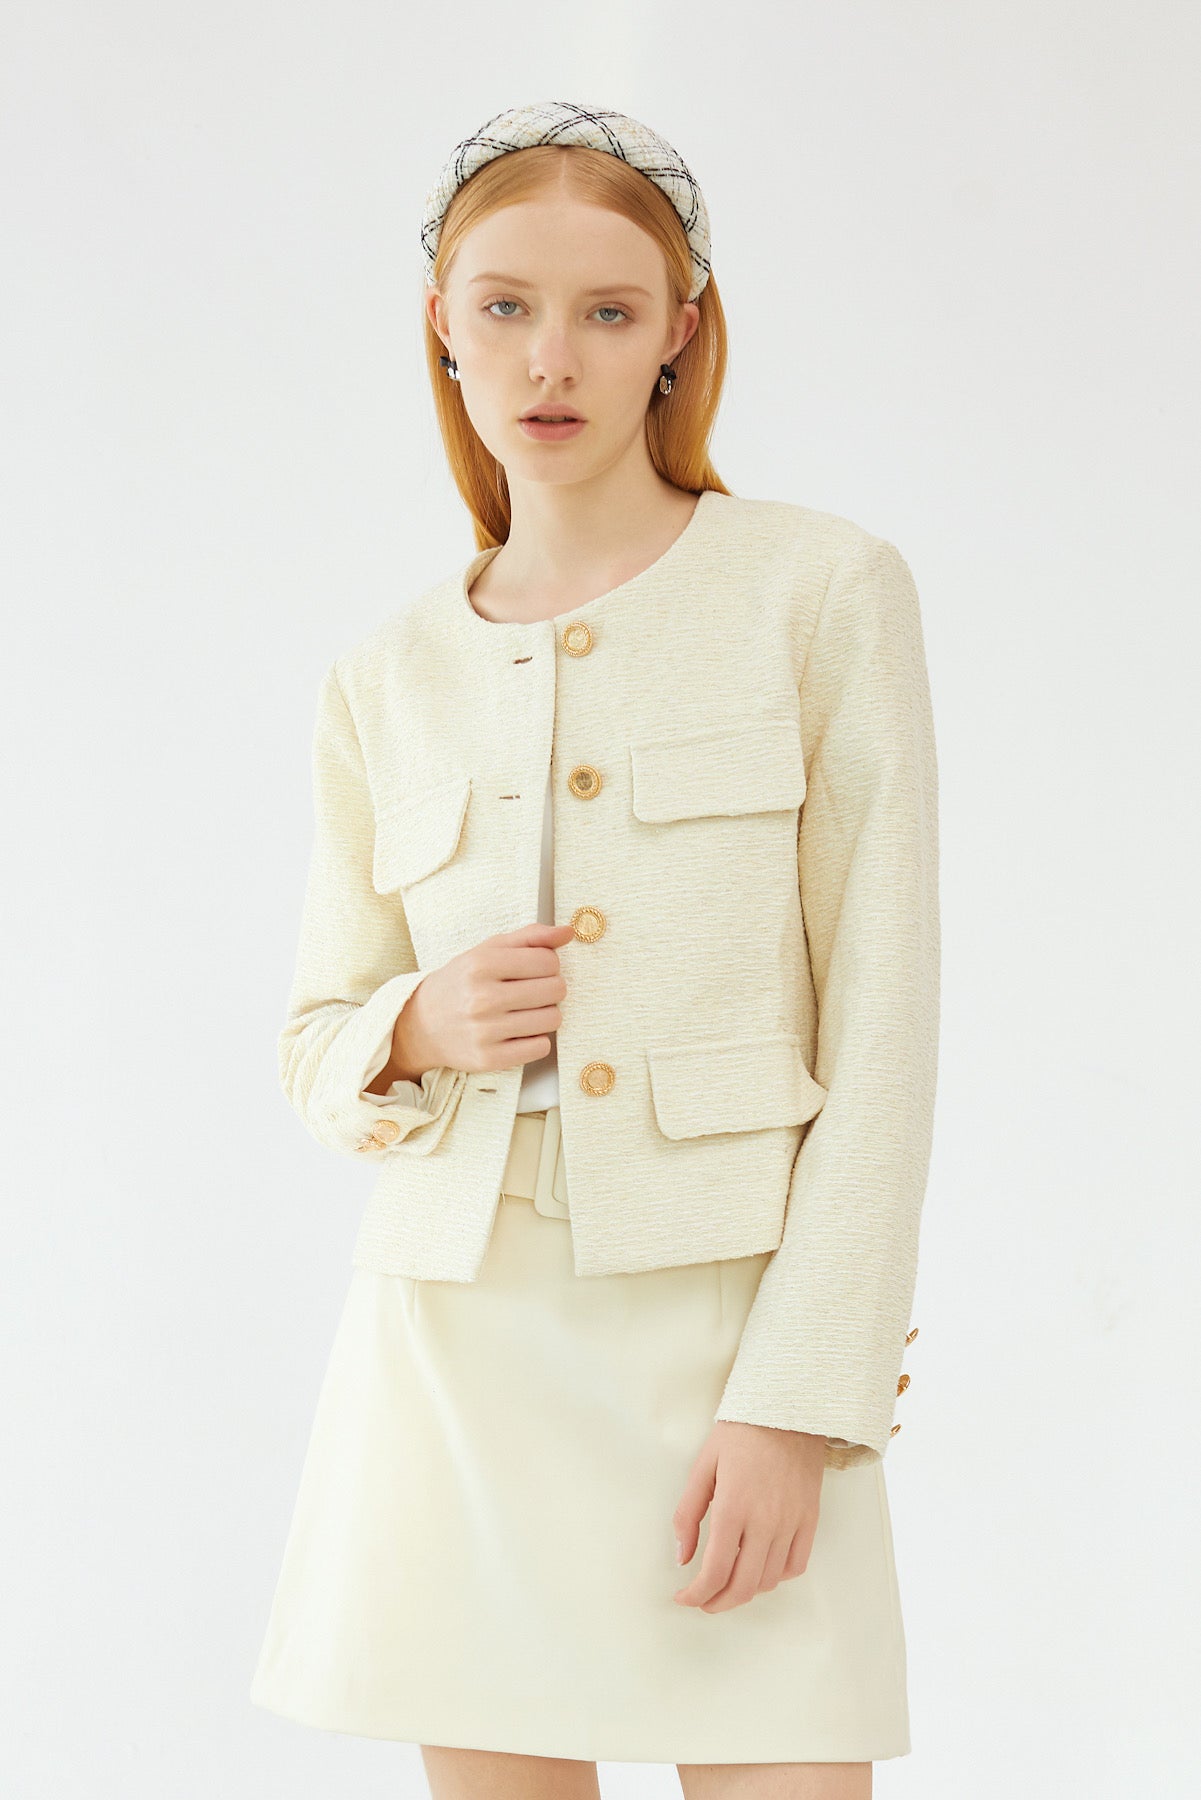 Clarette Tweed Jacket – SKYE